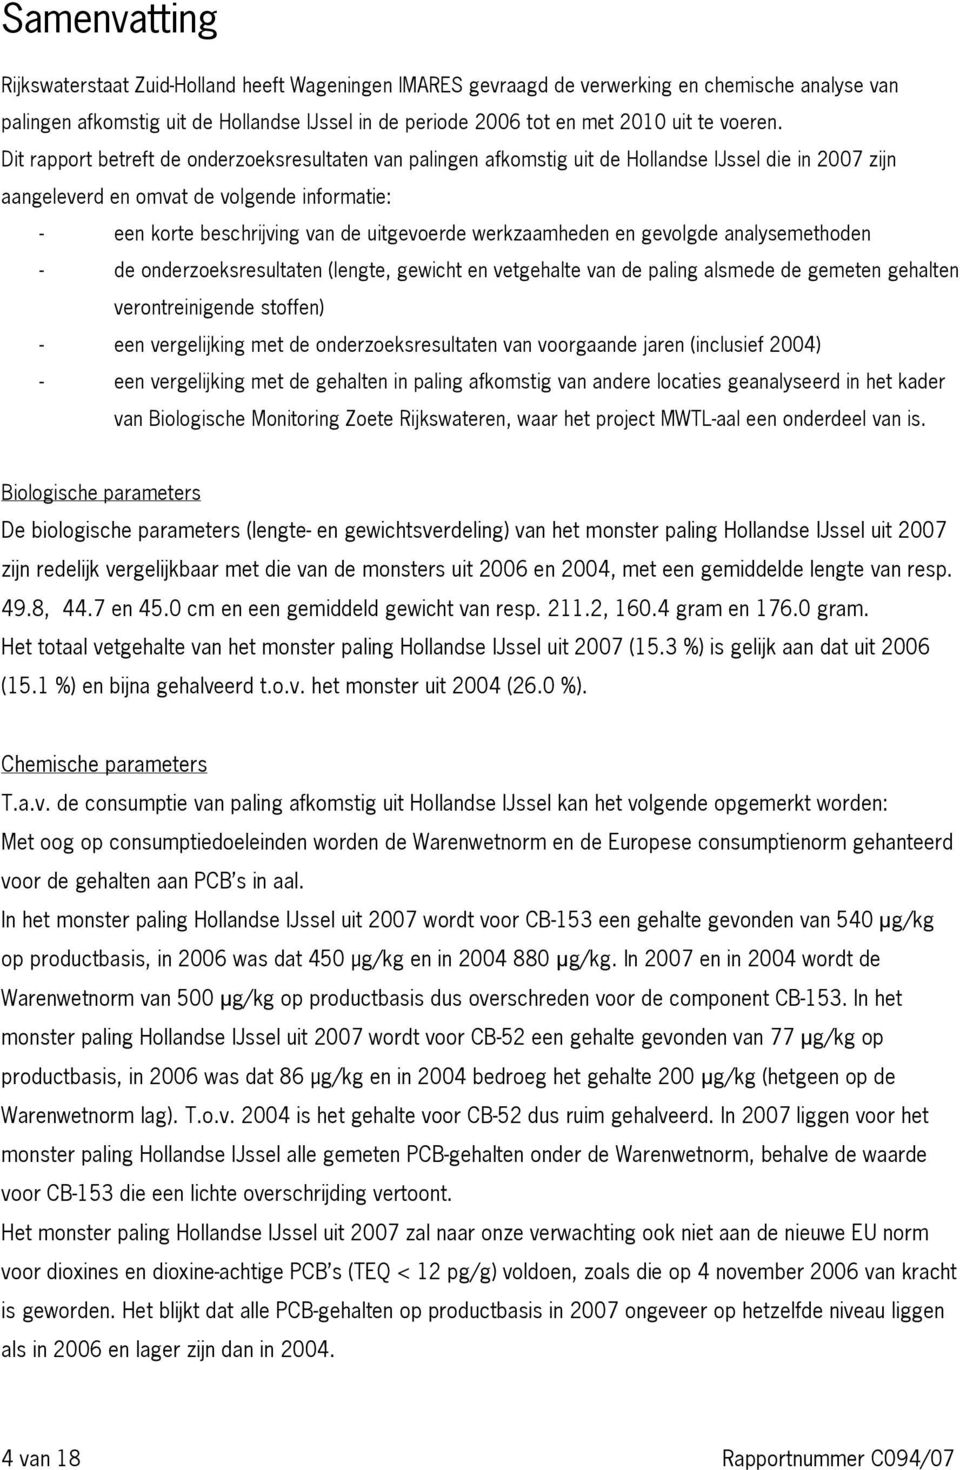 Dit rapport betreft de onderzoeksresultaten van palingen afkomstig uit de Hollandse IJssel die in 2007 zijn aangeleverd en omvat de volgende informatie: - een korte beschrijving van de uitgevoerde